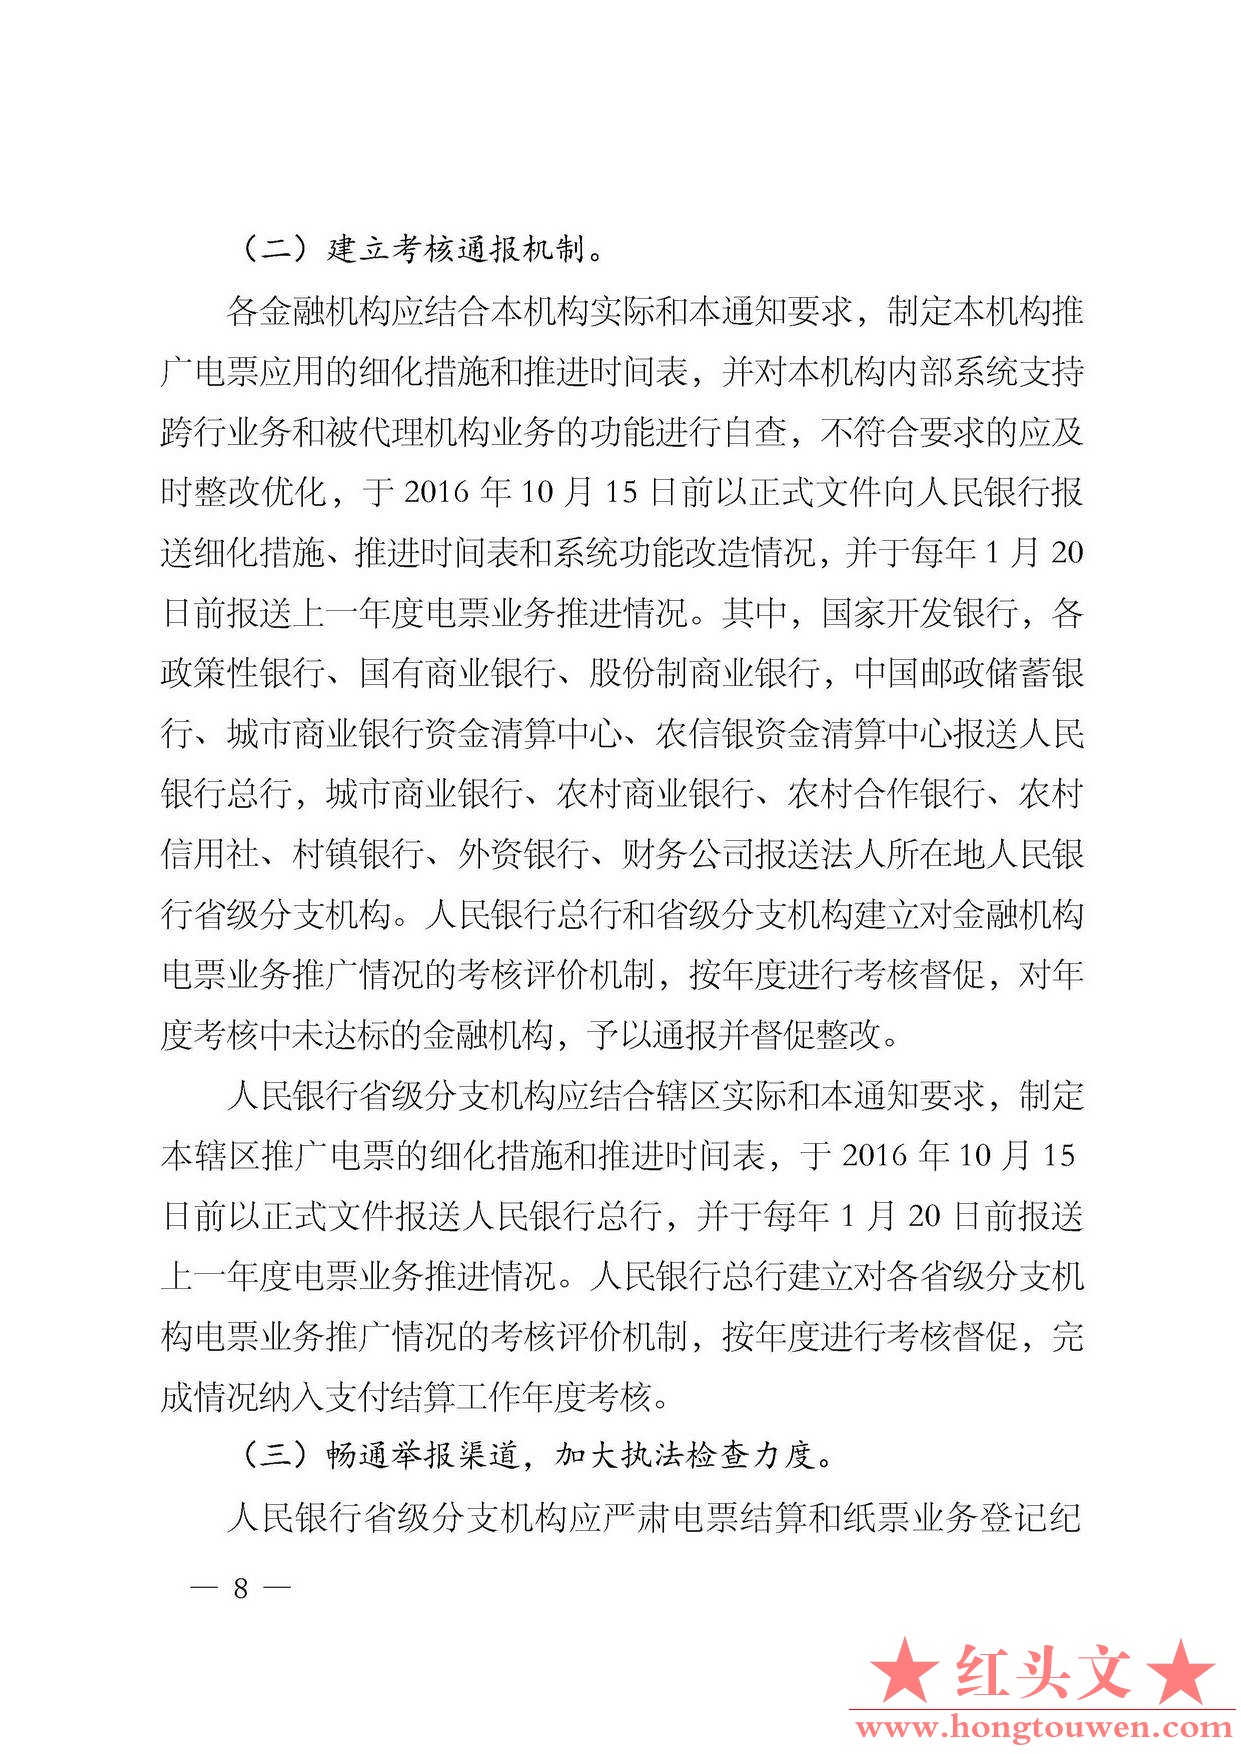 银发[2016]224号-中国人民银行关于规范和促进电子商业汇票业务发展的通知_页面_08.jpg.jpg